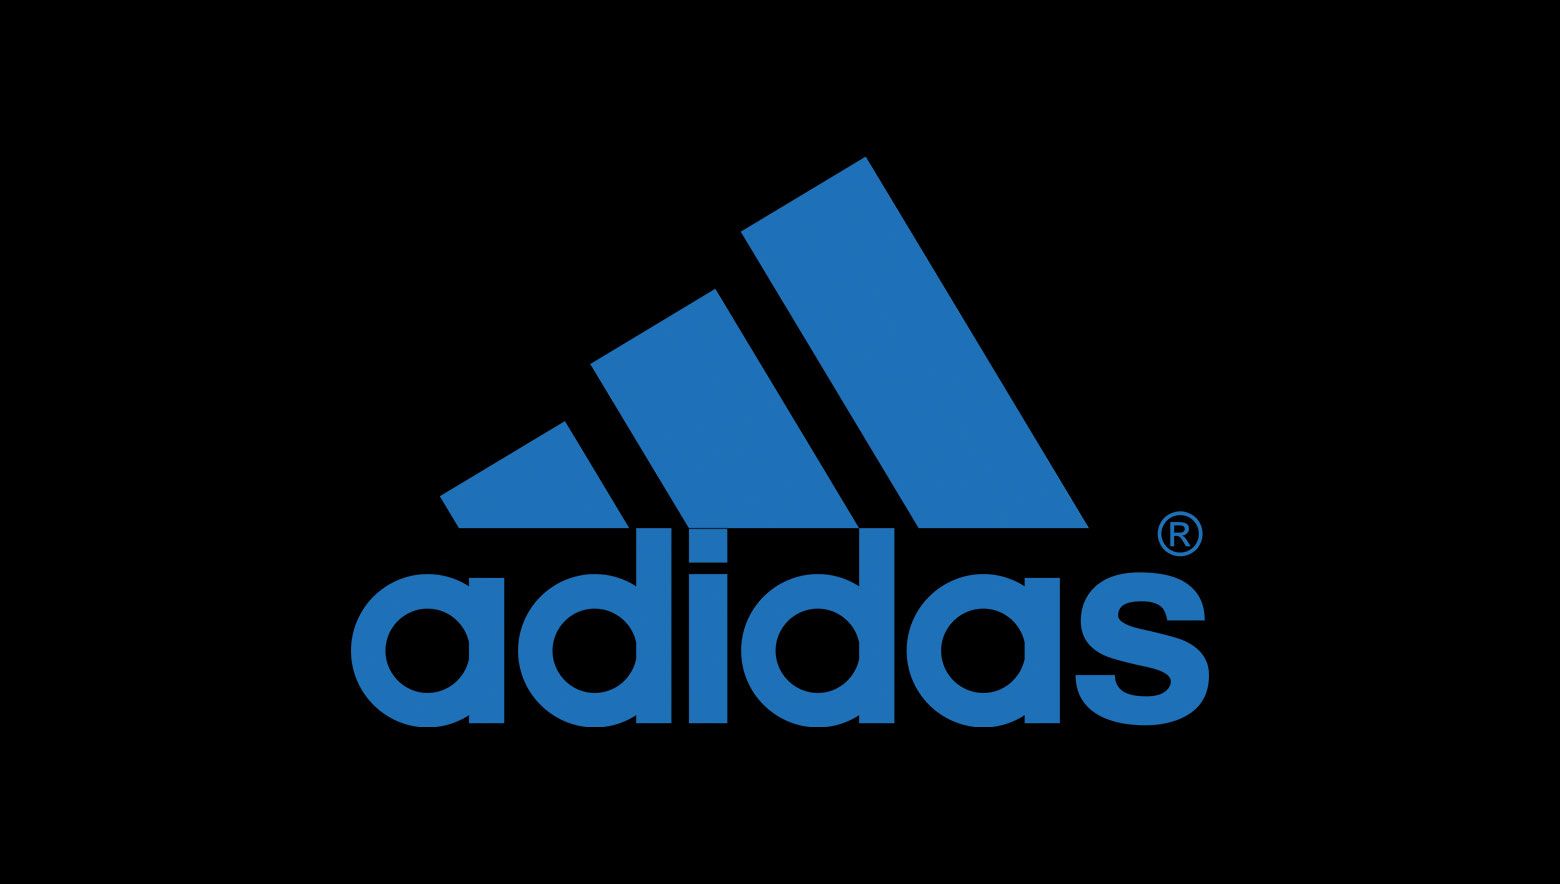 The adidas three-stripe logo in blue.